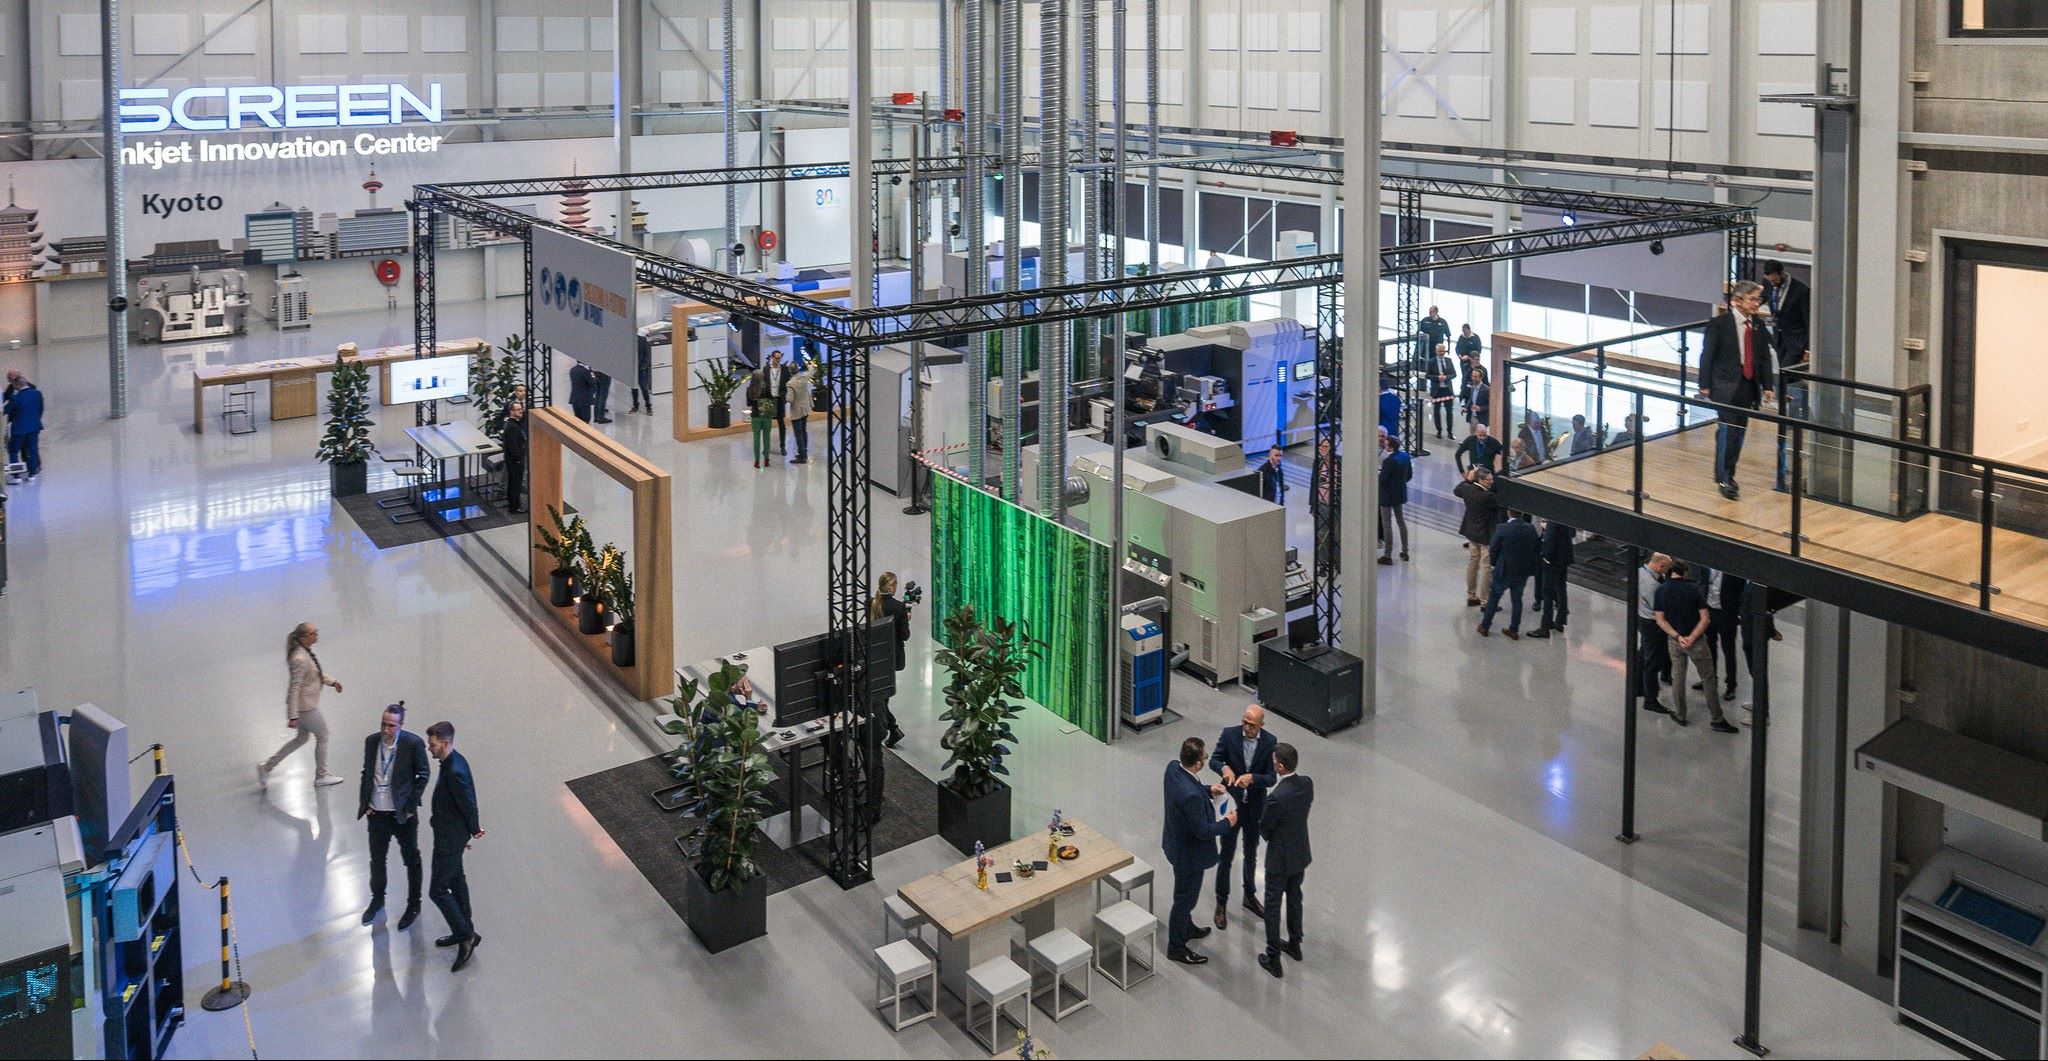 Screen Europe hat sein neues Inkjet Innovation Center (IIC) in Aalsmeer eingeweiht. Zum ersten Mal präsentiert der führende Hersteller von Inkjet-Digitaldruckmaschinen die gesamte Serie innovativer Druckmaschinen für den Etiketten-, Verpackungs-, Akzidenz- und CtP-Druck in einem Raum.